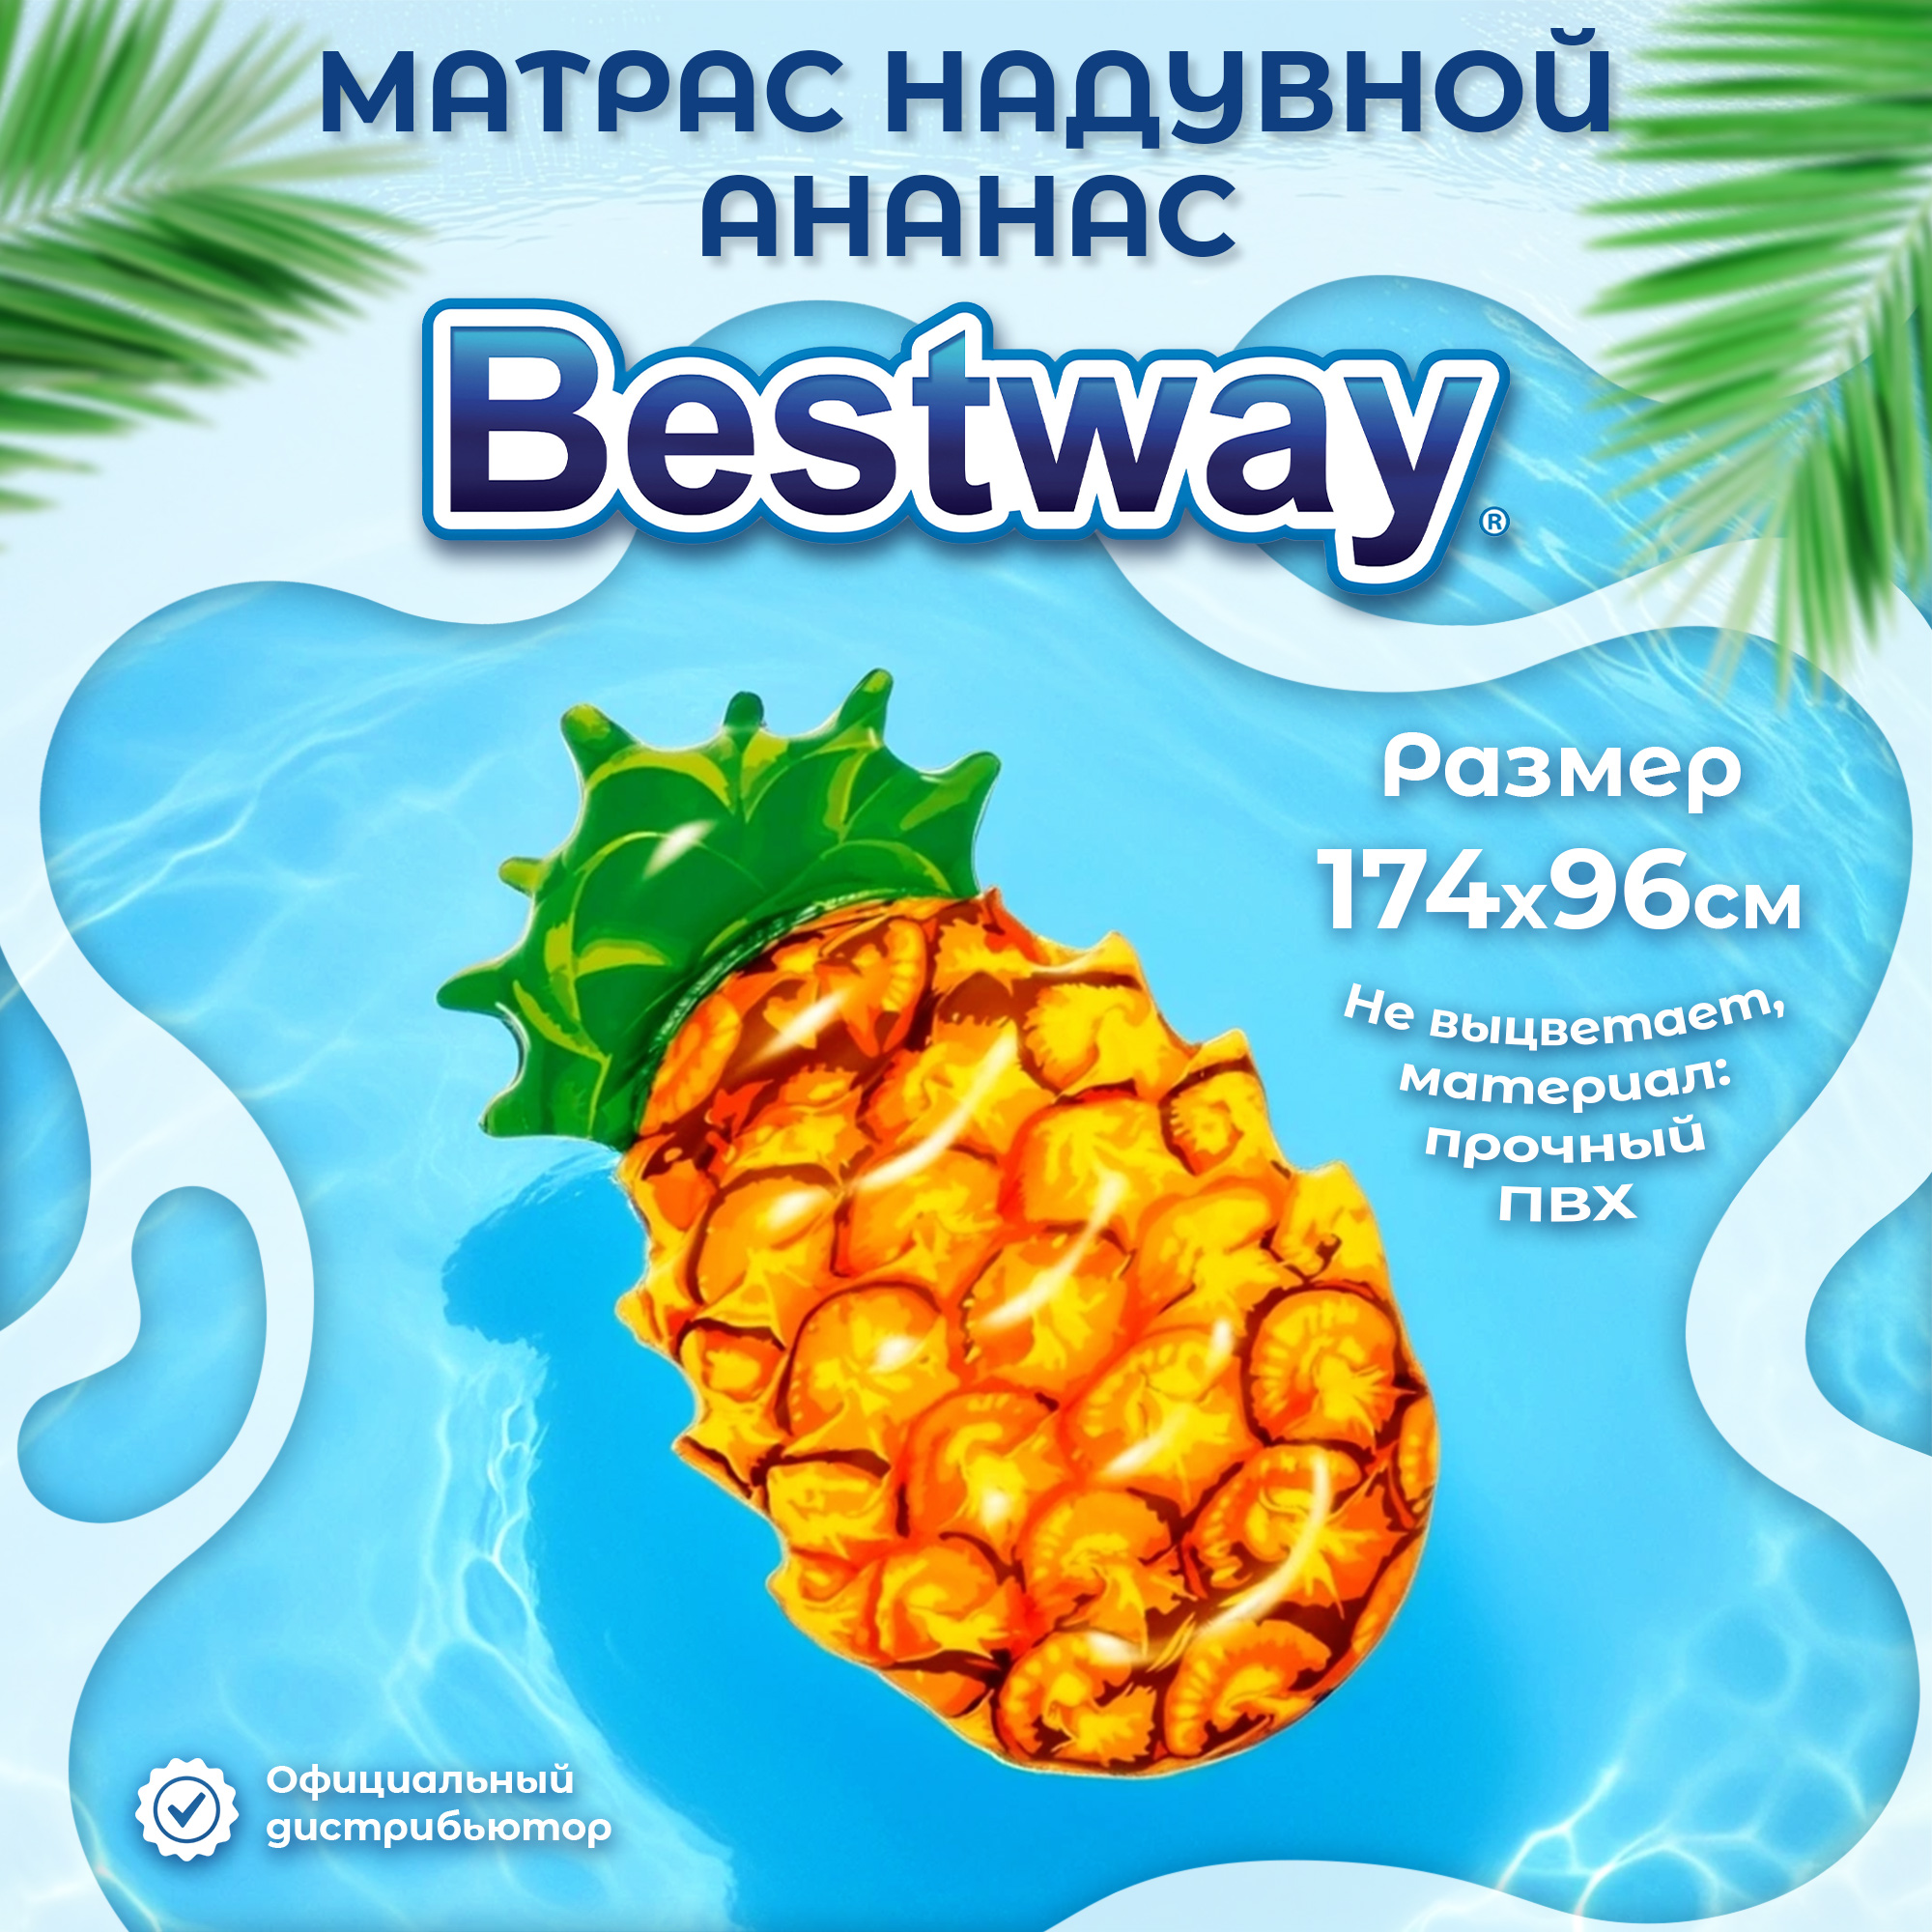 Матрас надувной Bestway Ананас 1,74x96 см (43310), цвет желтый - фото 2